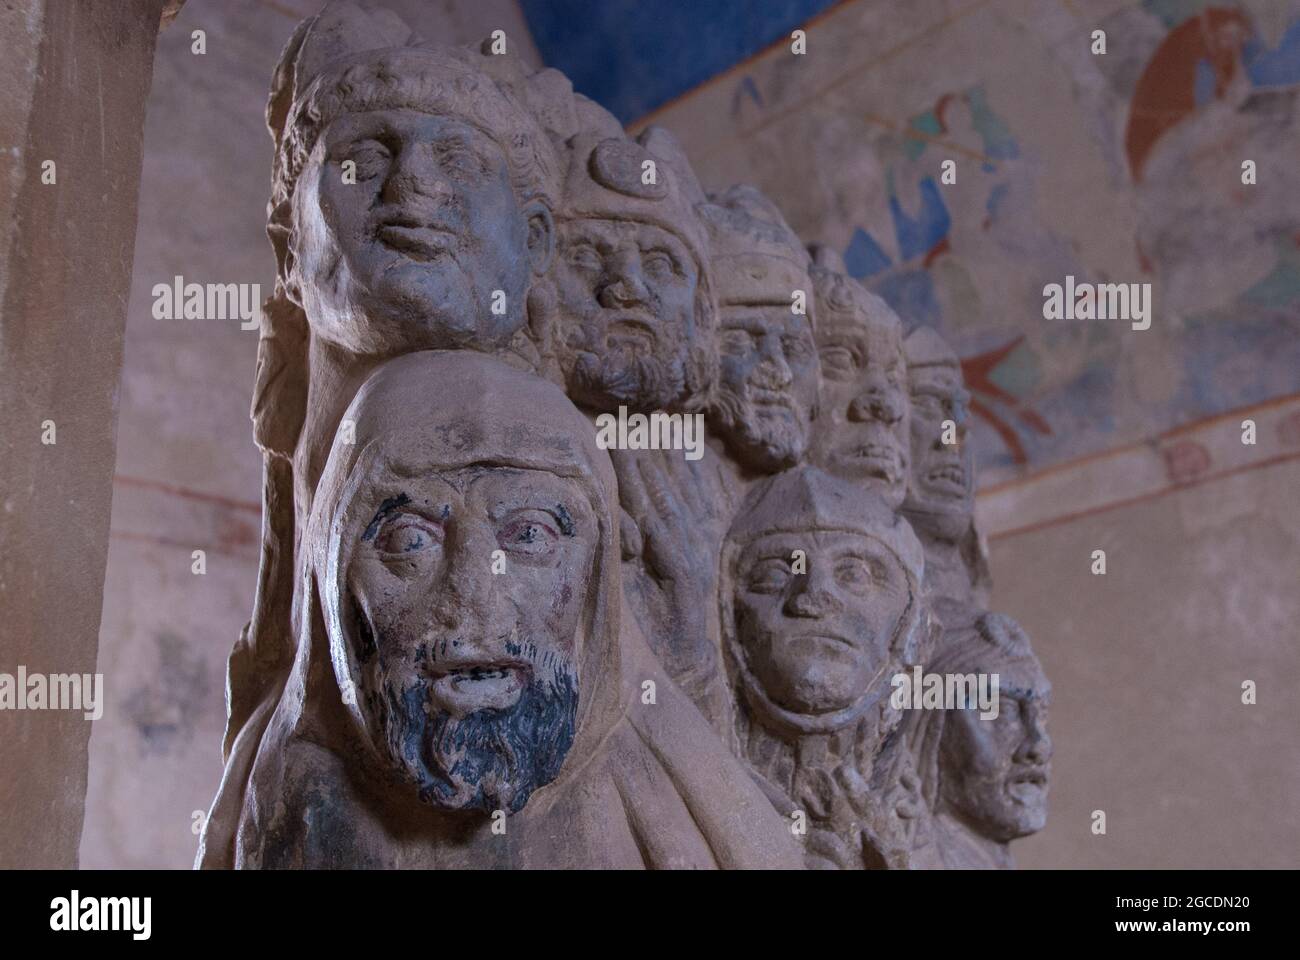 Au musée de Carcassonne : autel médiéval avec un relief représentant des témoins de la crucifixion du christ Banque D'Images